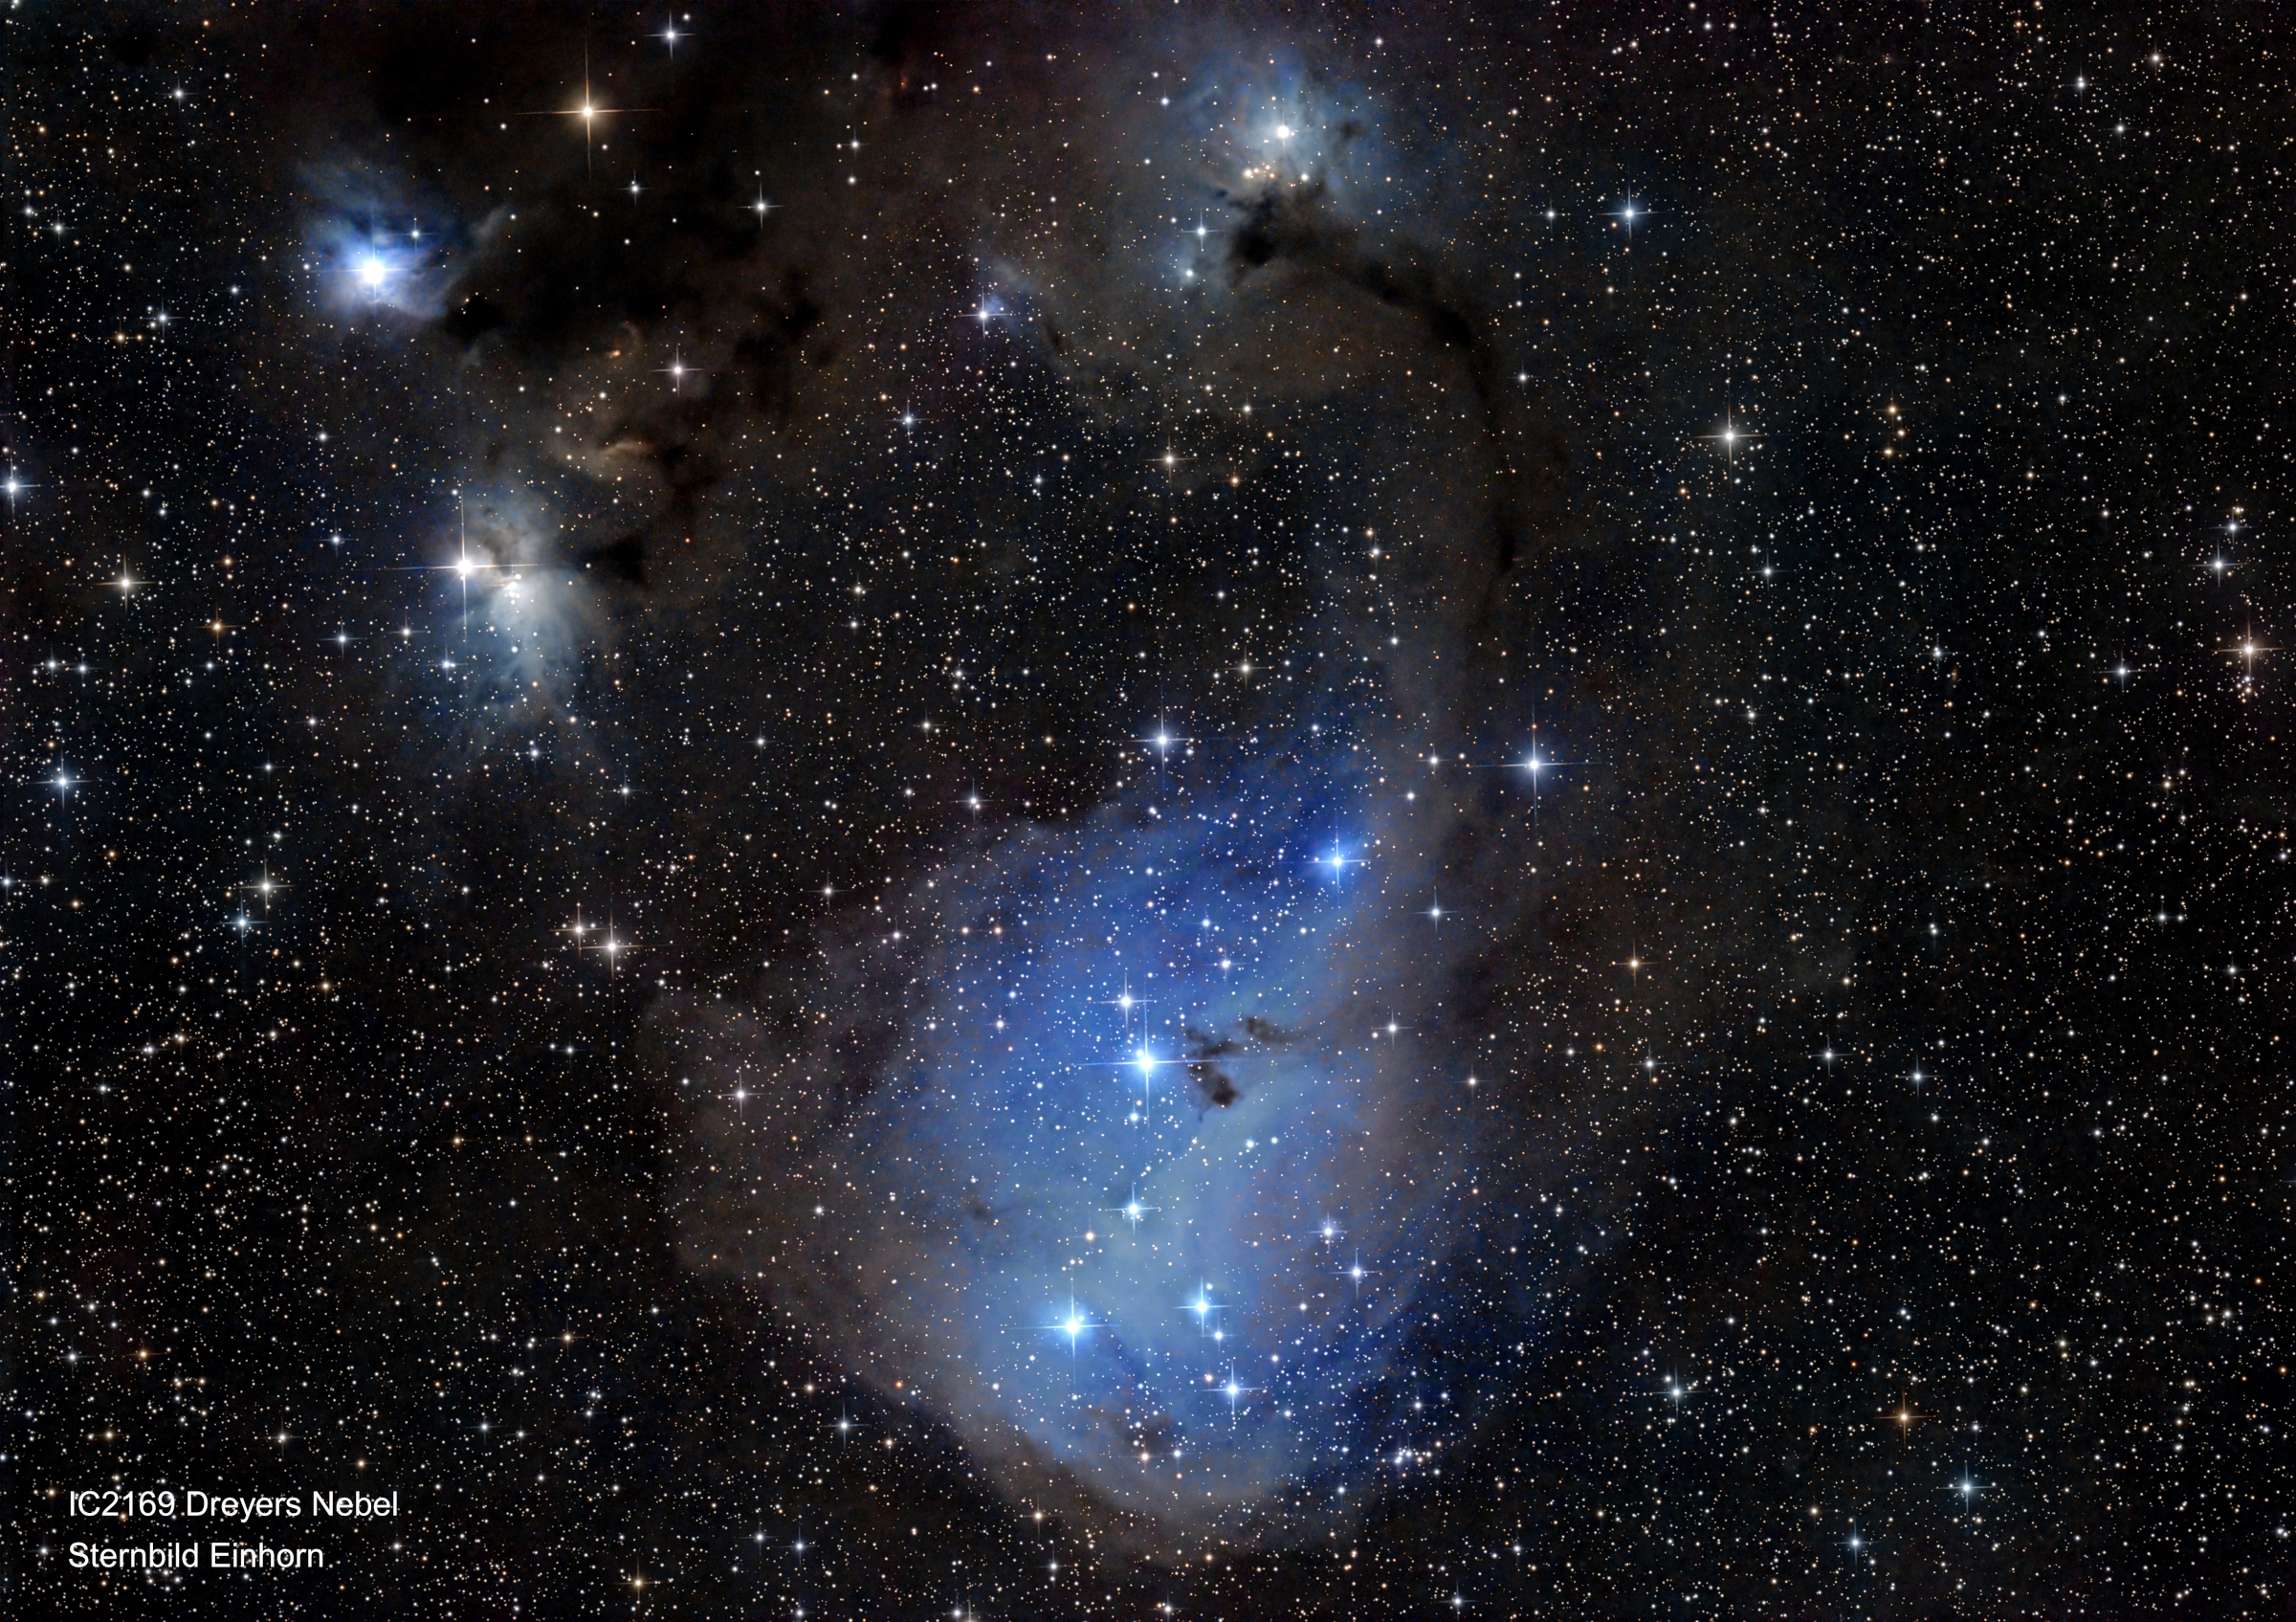 IC2169 Dreyers Nebel